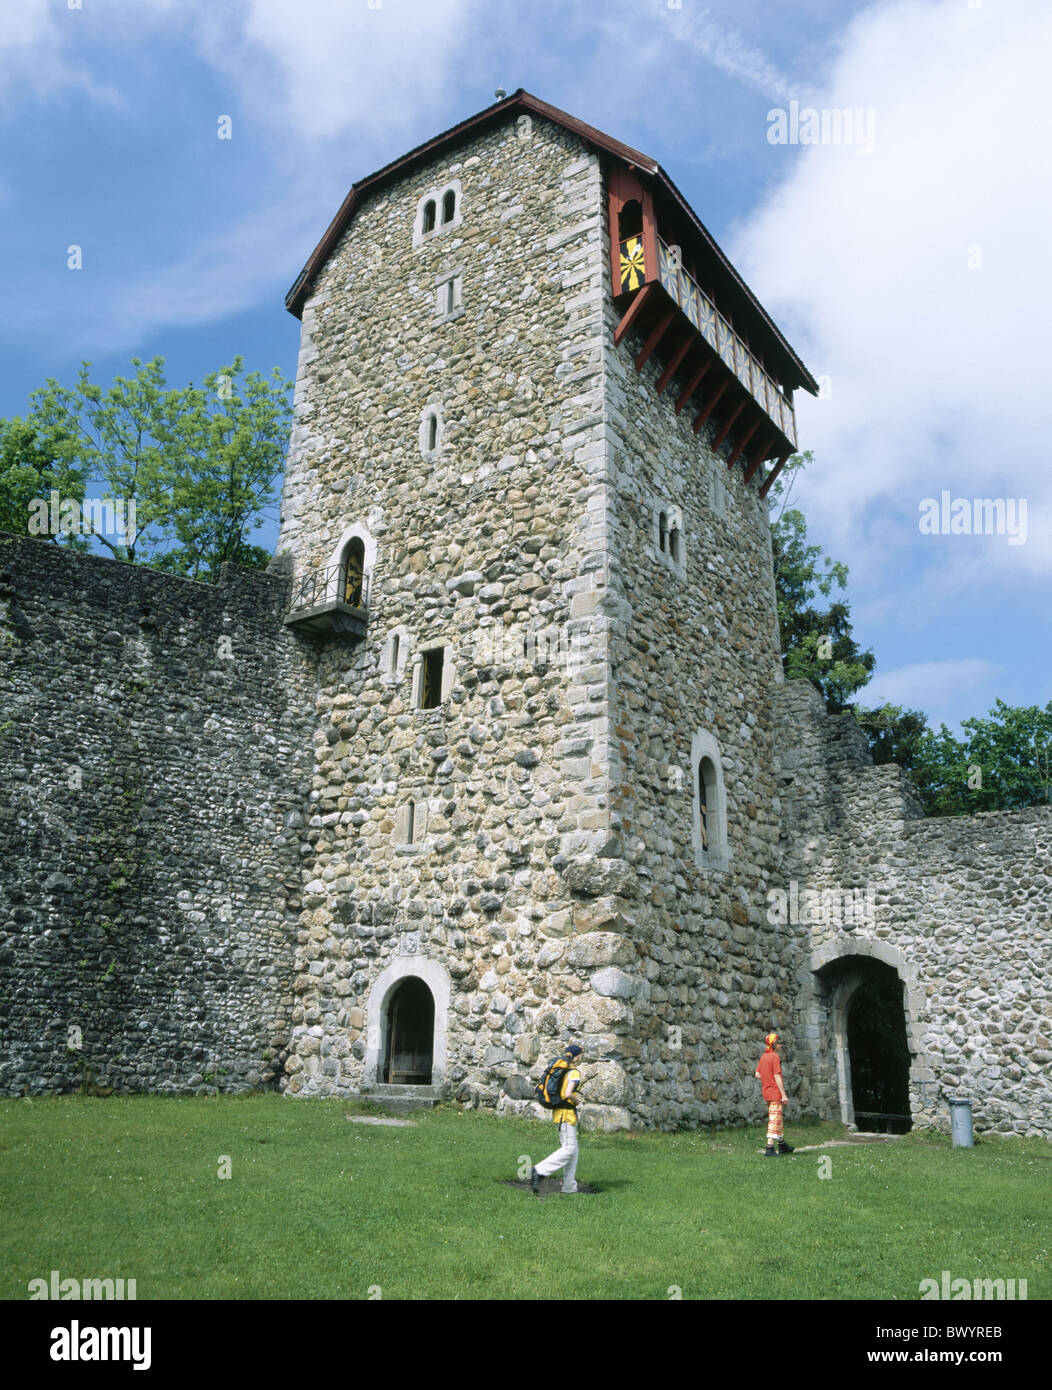 Storico castello di Cantone San Gallo Medioevo castello Iberg Svizzera Europa Toggenburg tower rook Wat Foto Stock